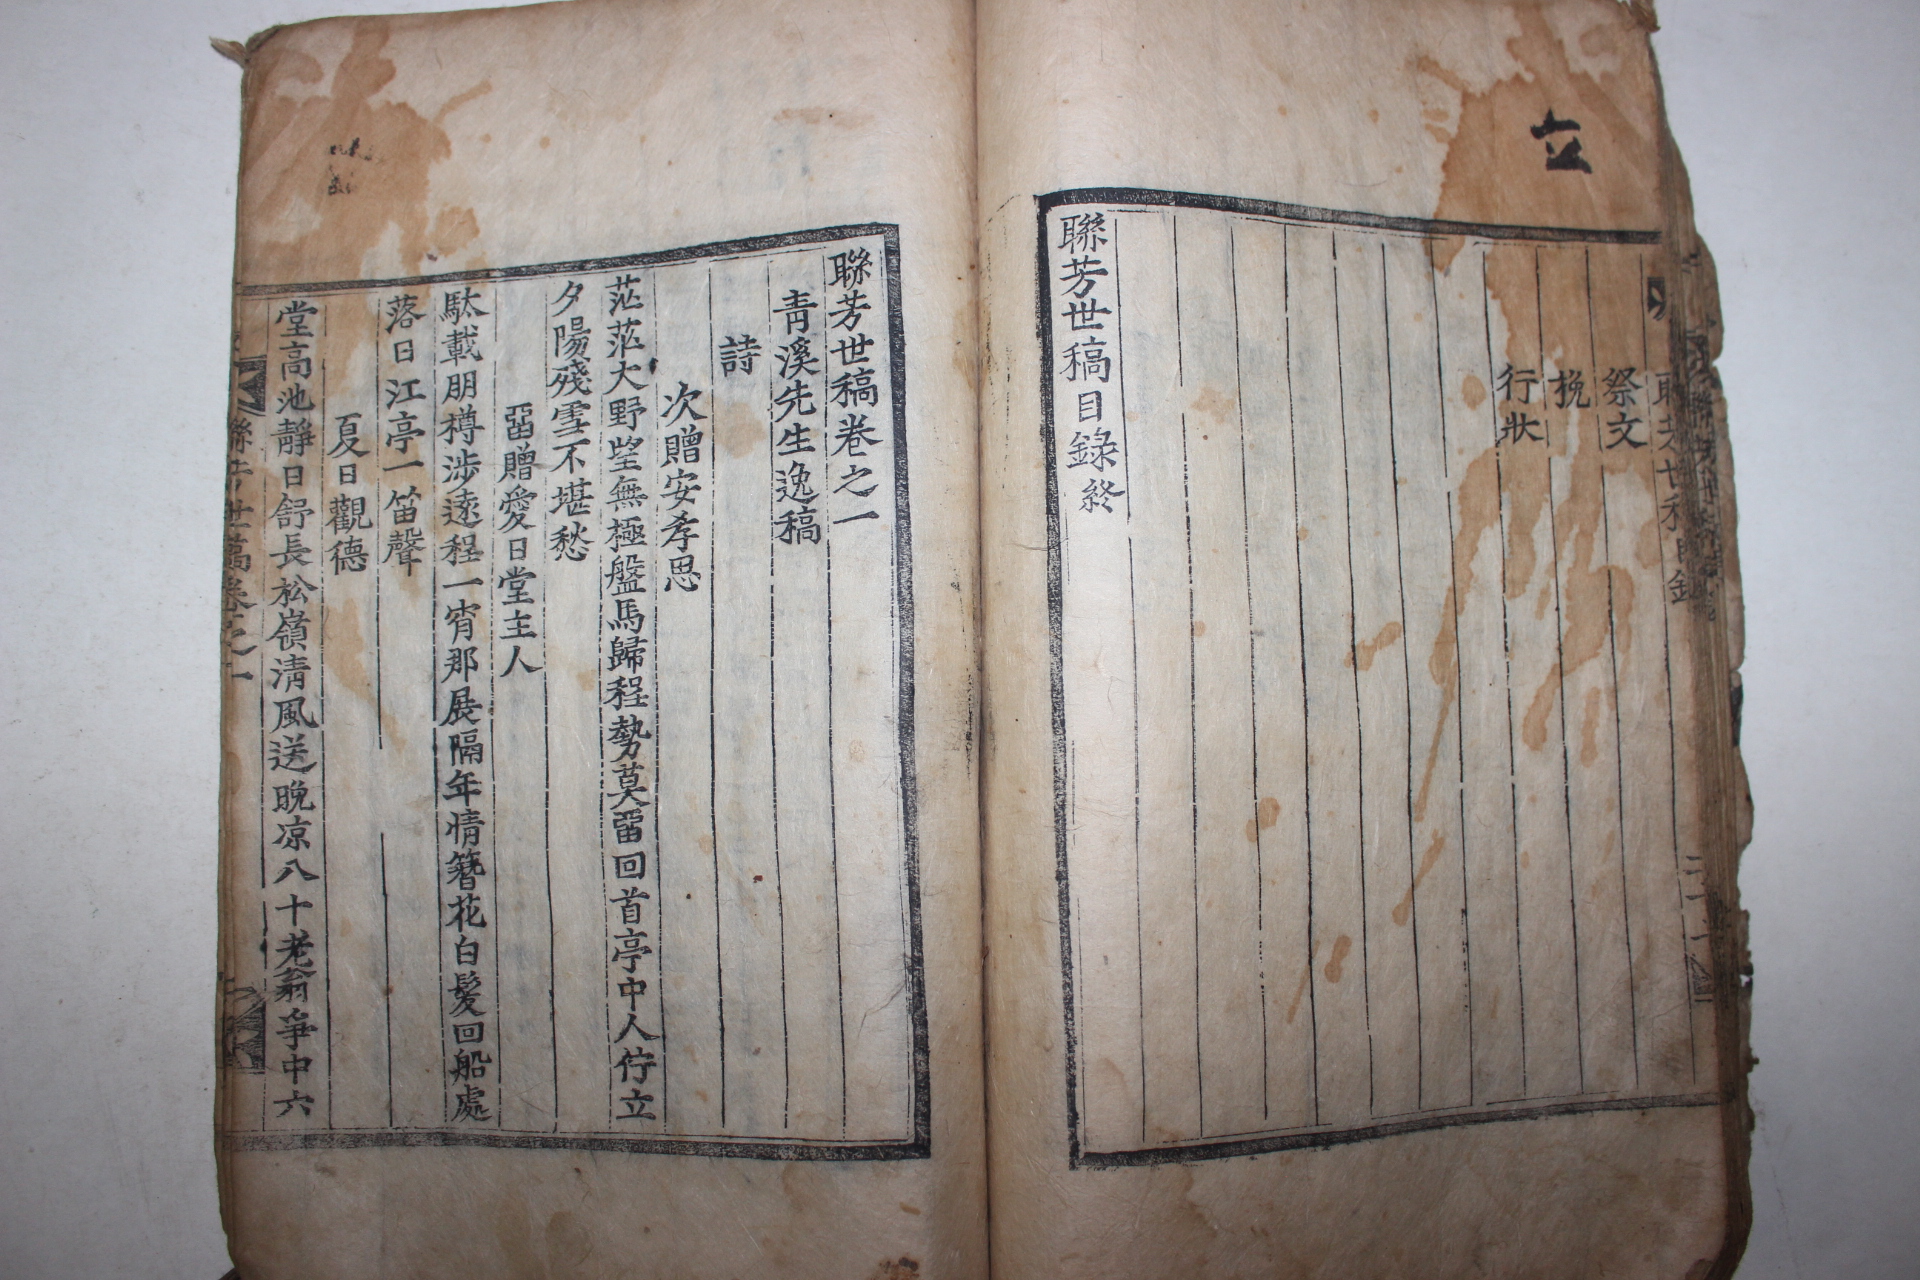 1785년 목판본 연방세고(聯芳世稿)권1 1책 김진(金璡) 청계선생일고(靑溪先生逸稿)편